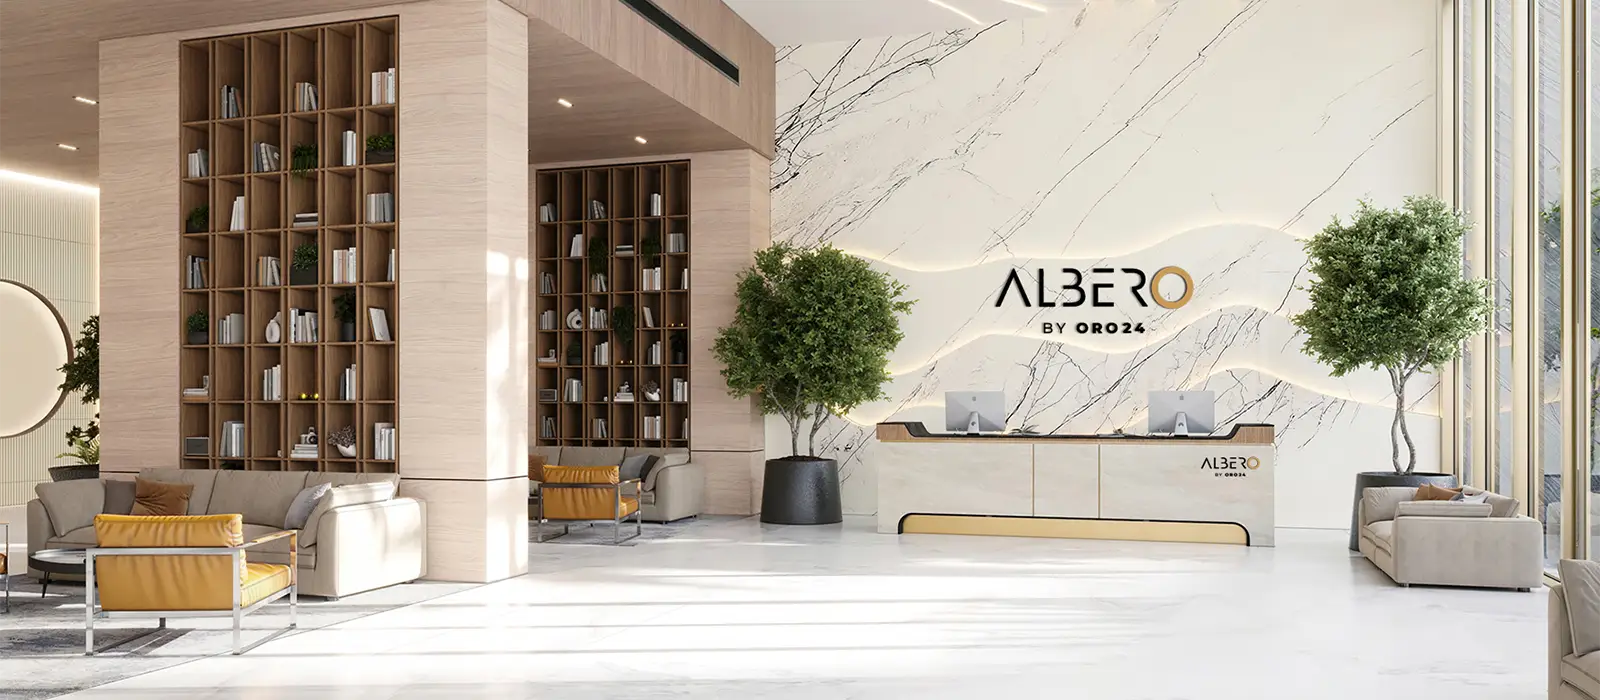 Premium Apartments at Albero by ORO24